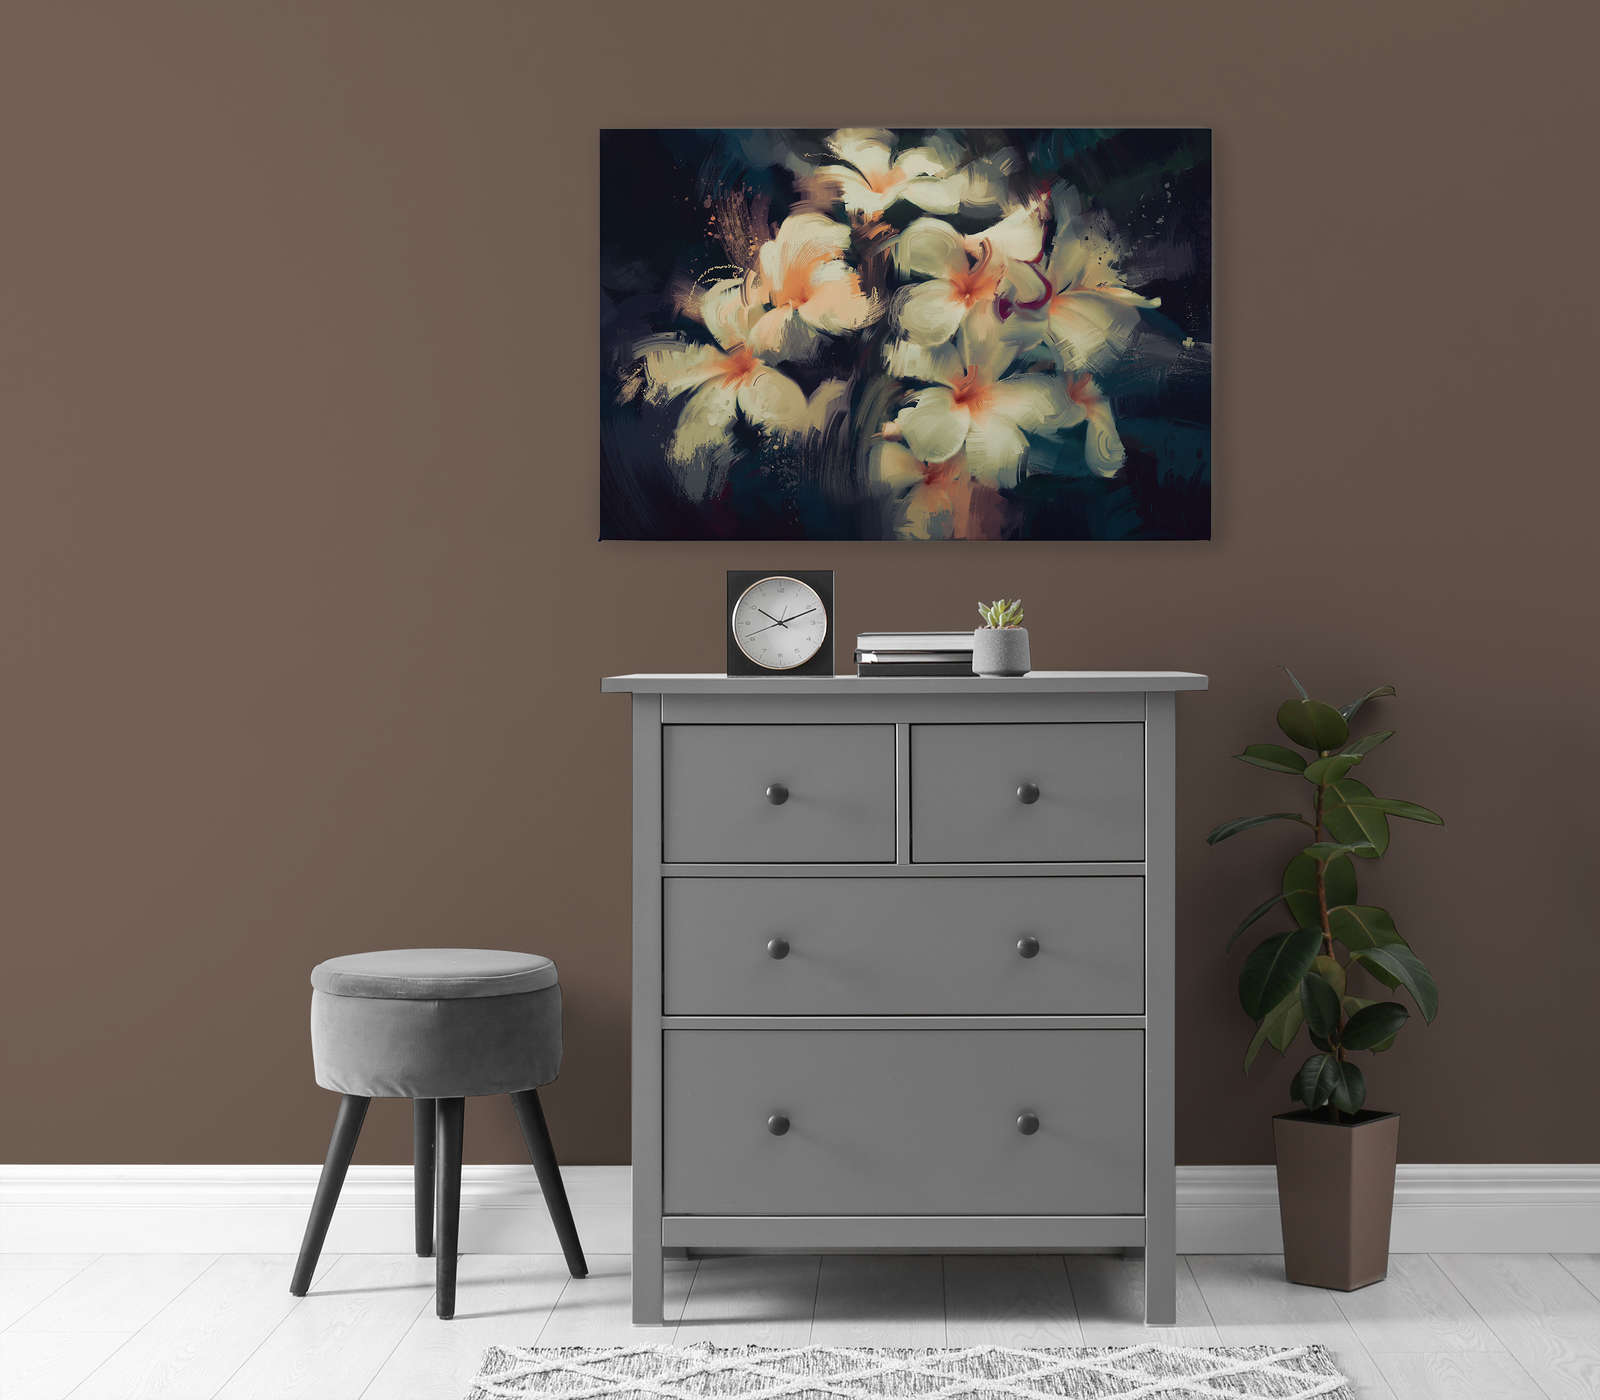             Canvas schilderij Boeket bloemen geschilderd met veegtechniek - 0,90 m x 0,60 m
        